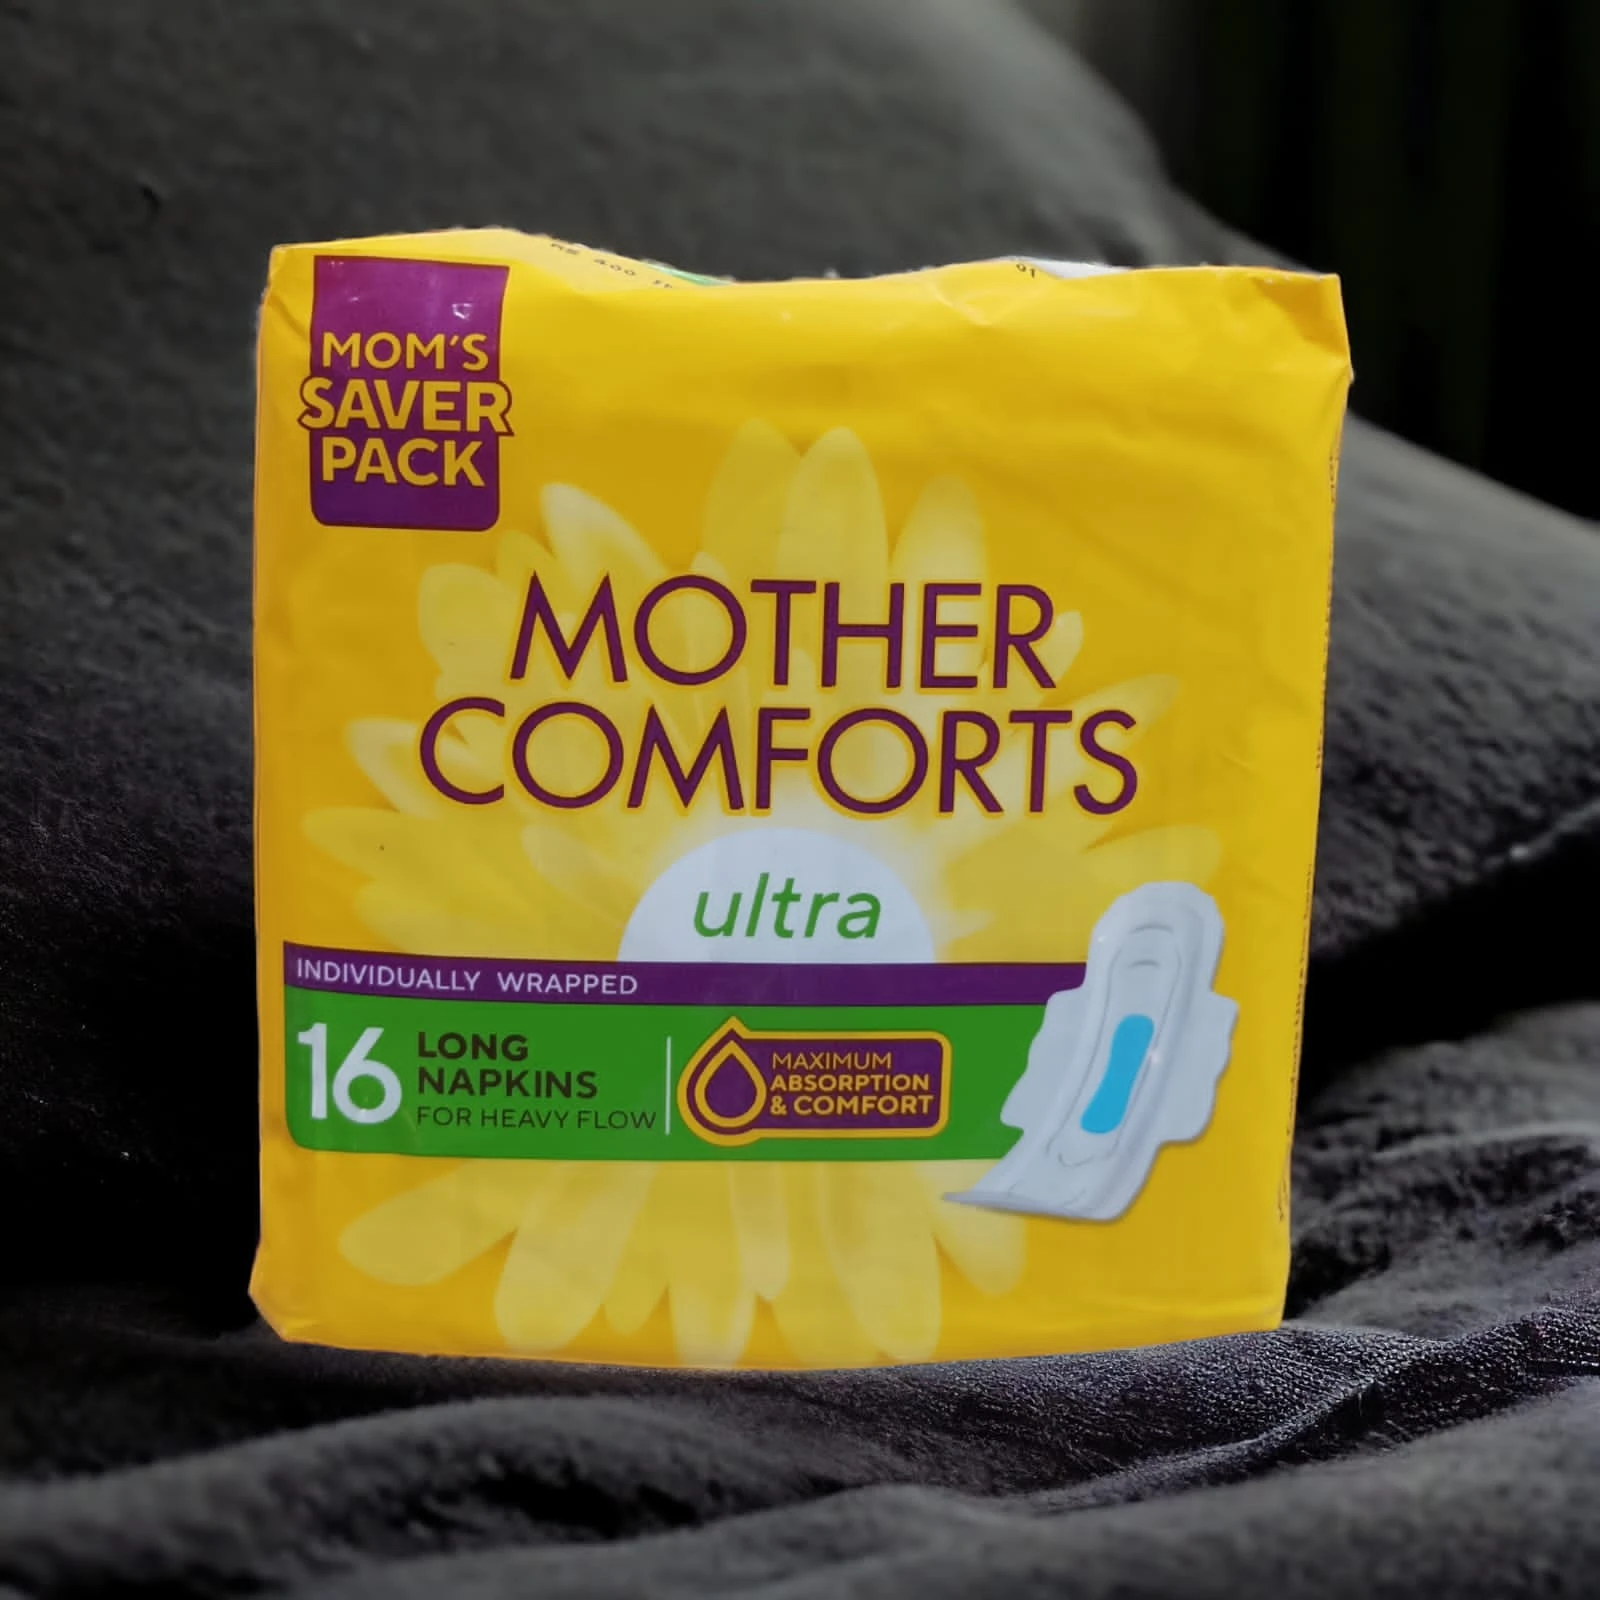 Mother comfort